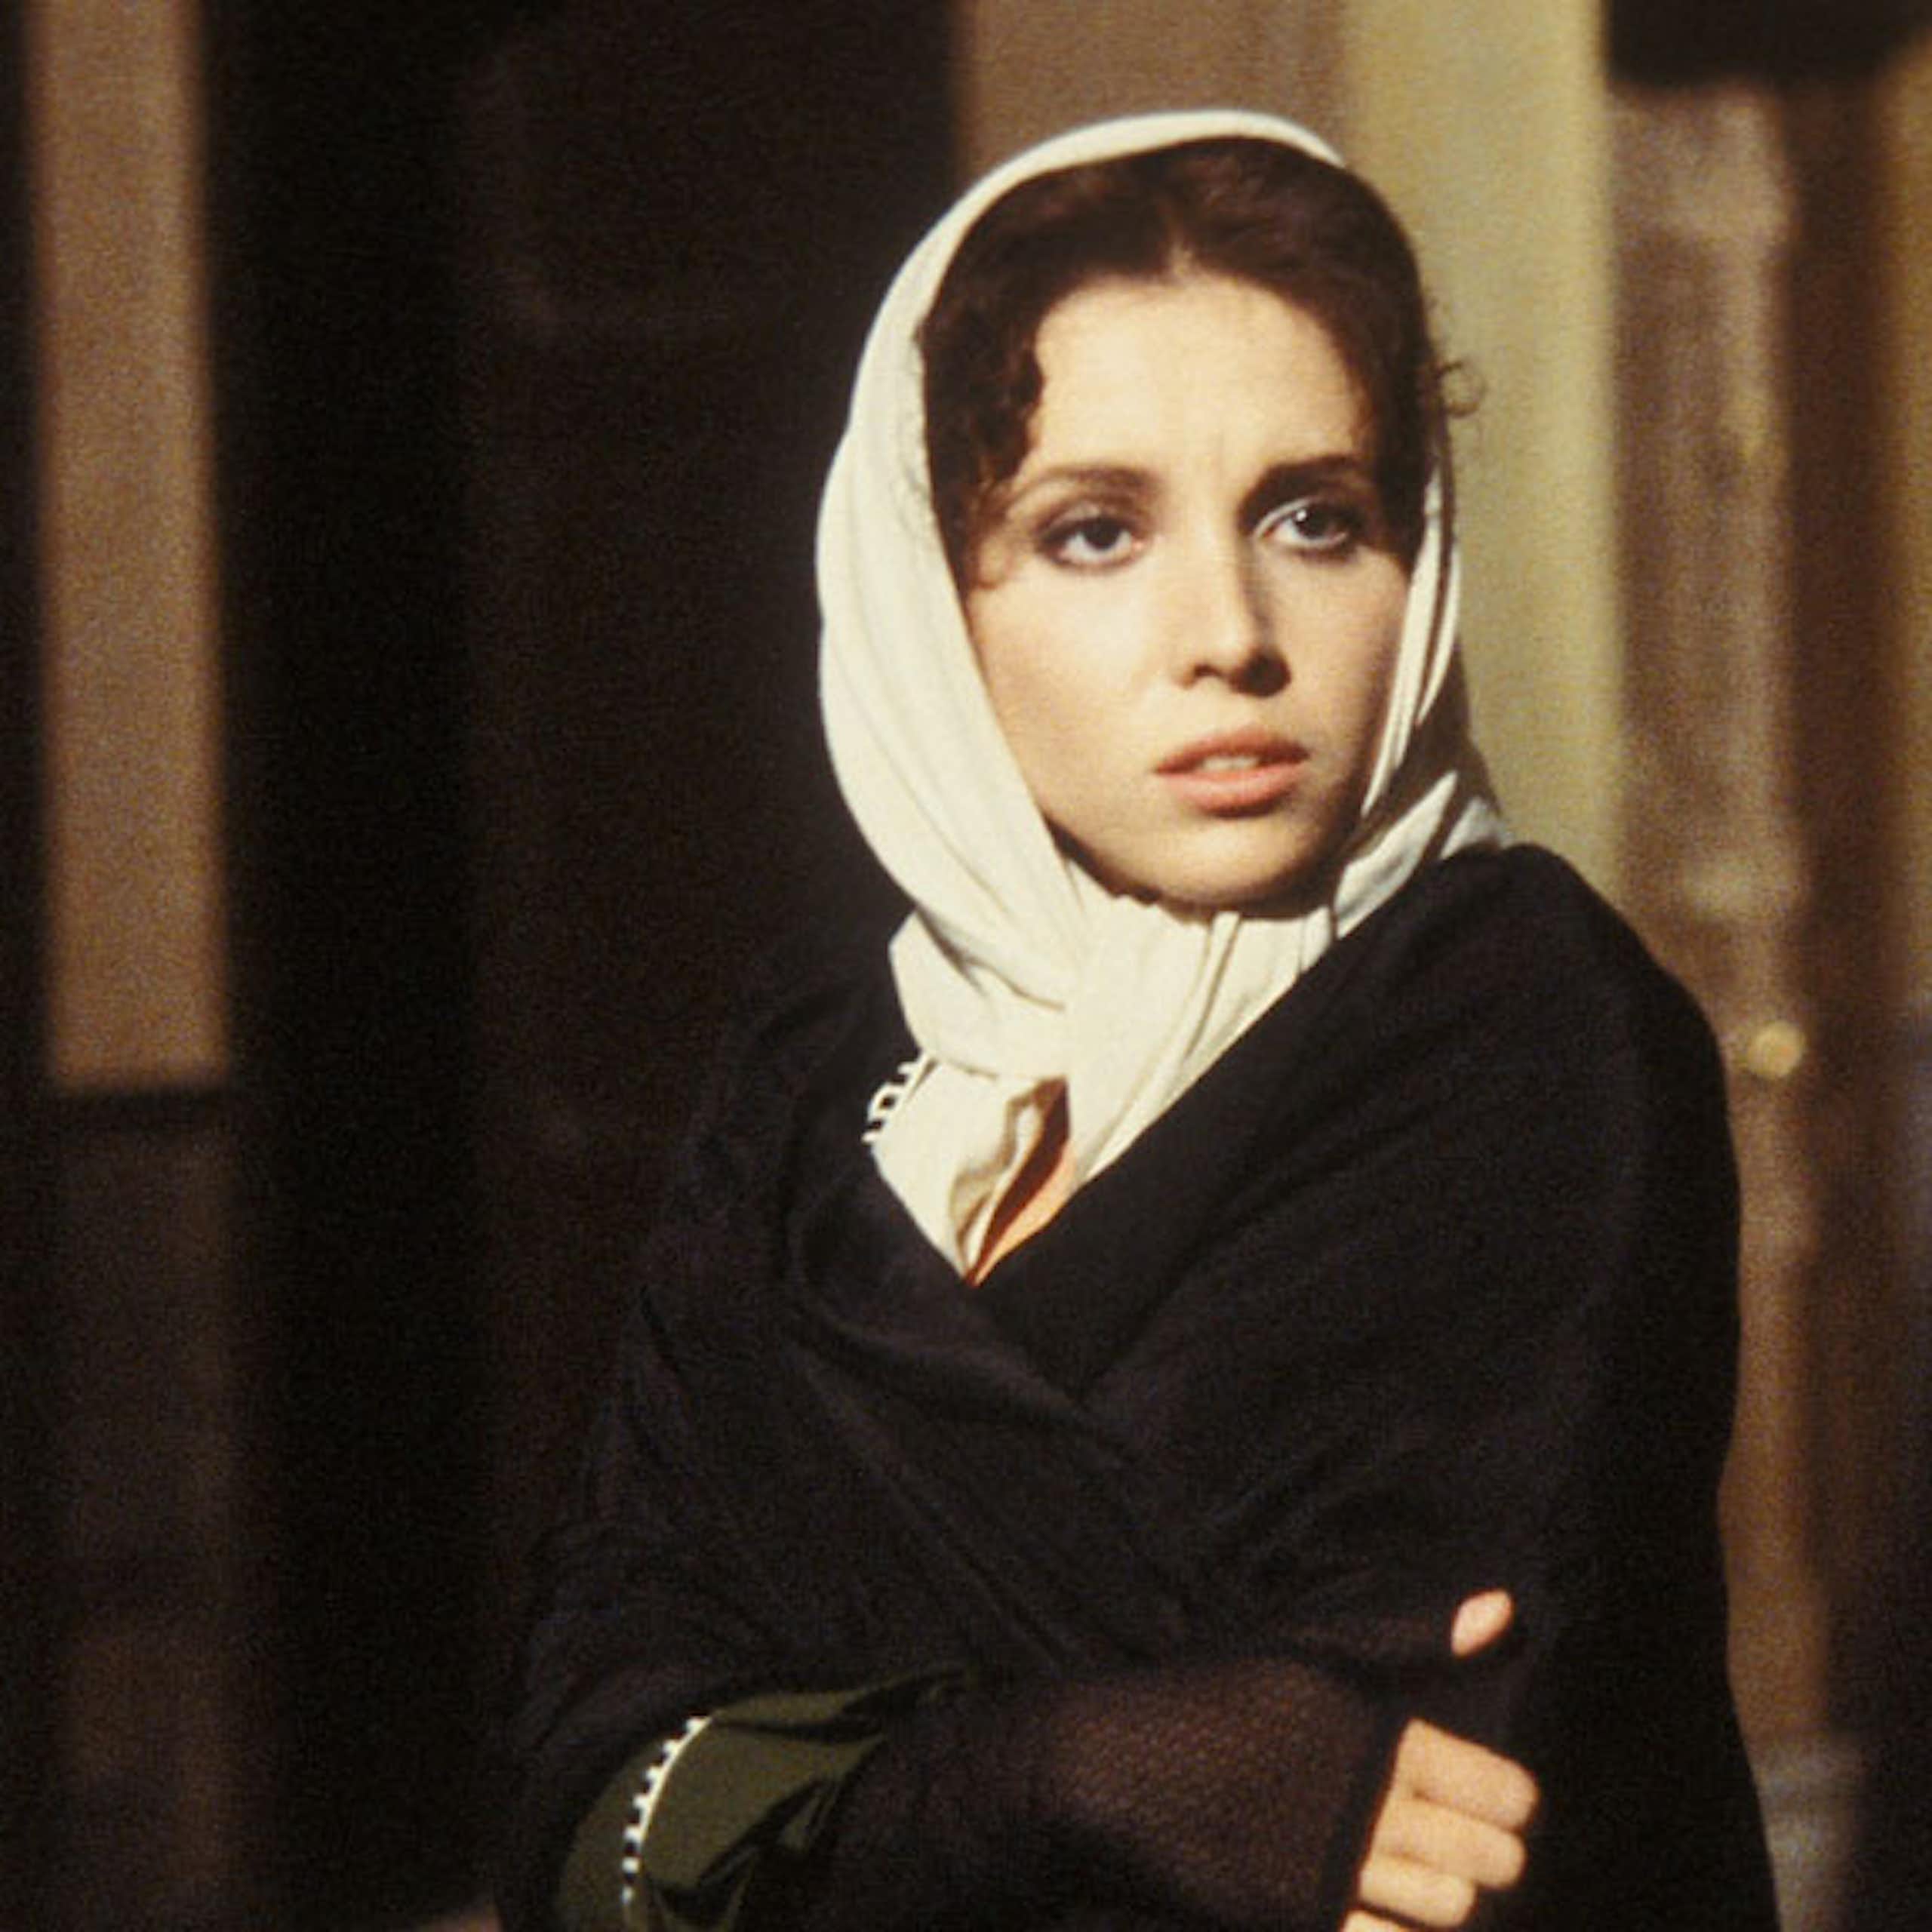 Ana Belén, interpretando a Fortunata en un fotograma de la serie de TVE 'Fortunata y Jacinta', dirigida por Mario Camus.